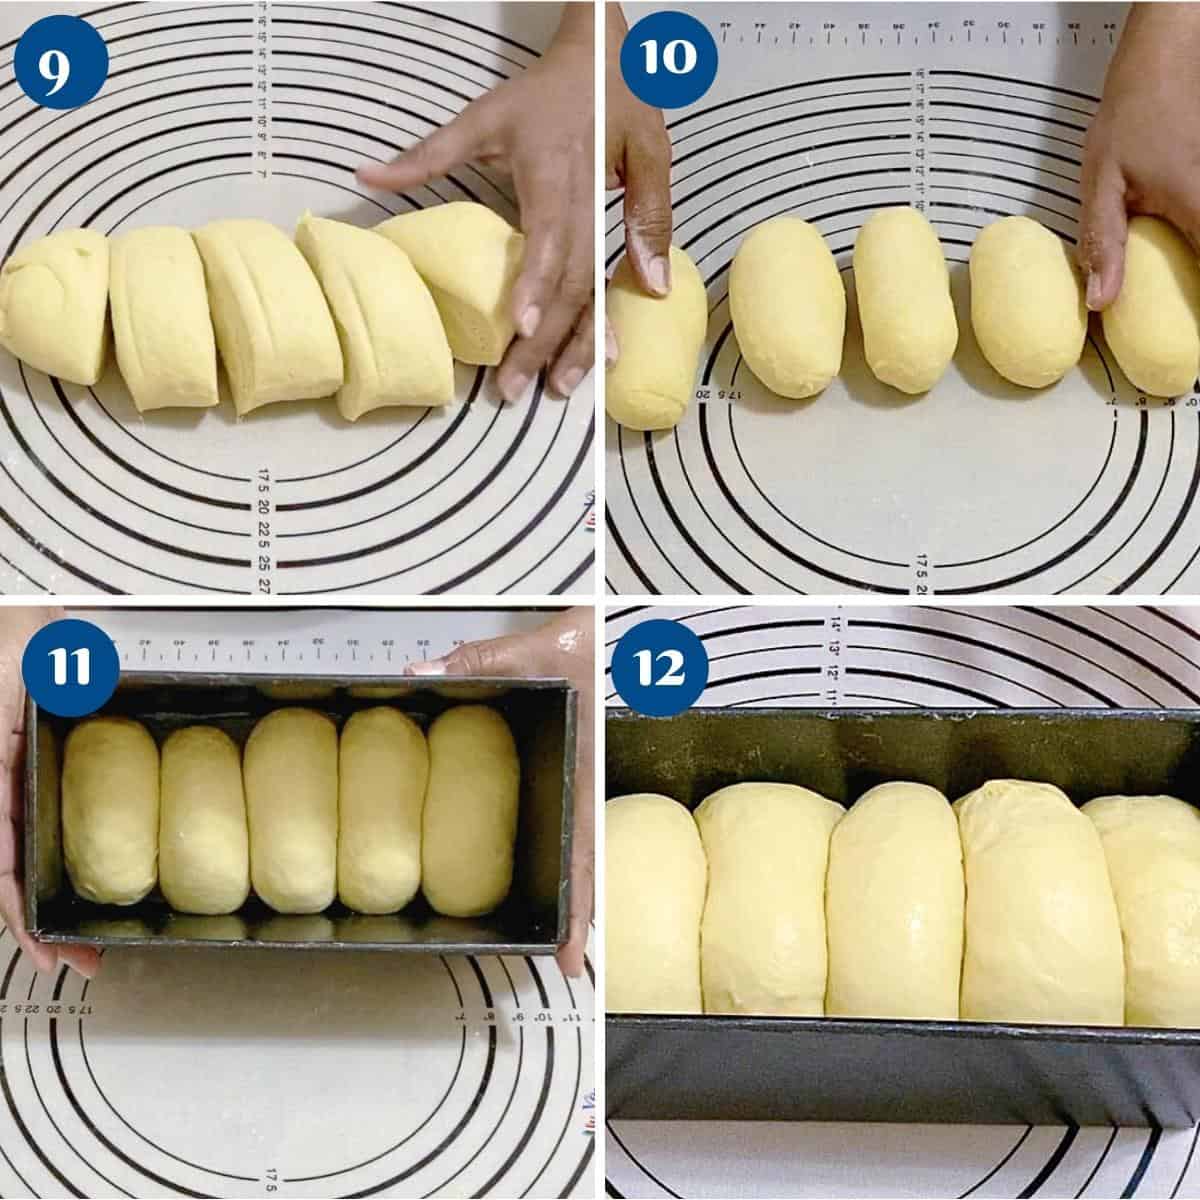 Progress pictures shaping the brioche bread.